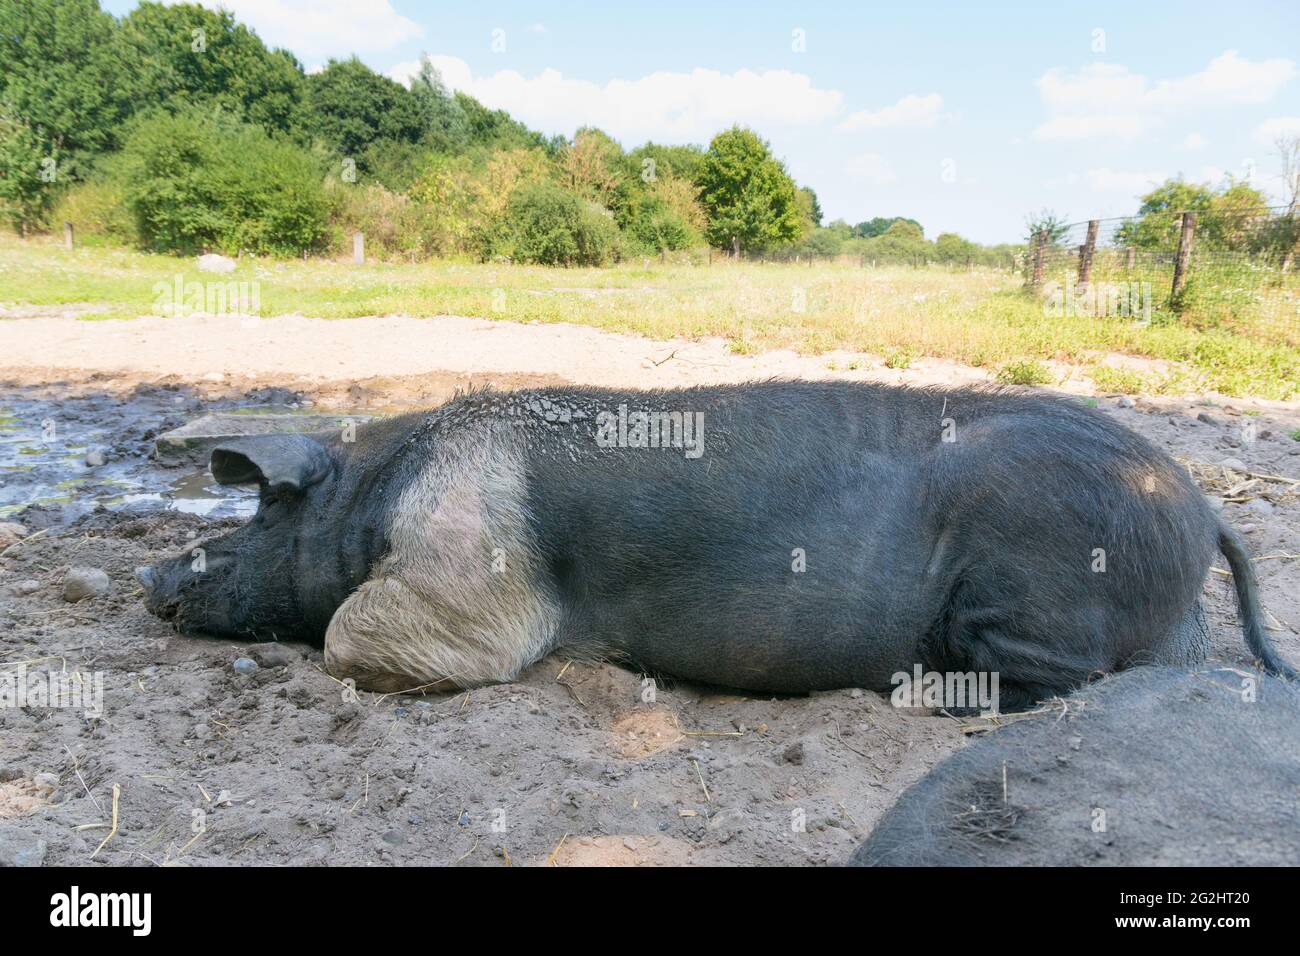 El angler saddle pig es una subespecie del cerdo doméstico. Foto de stock